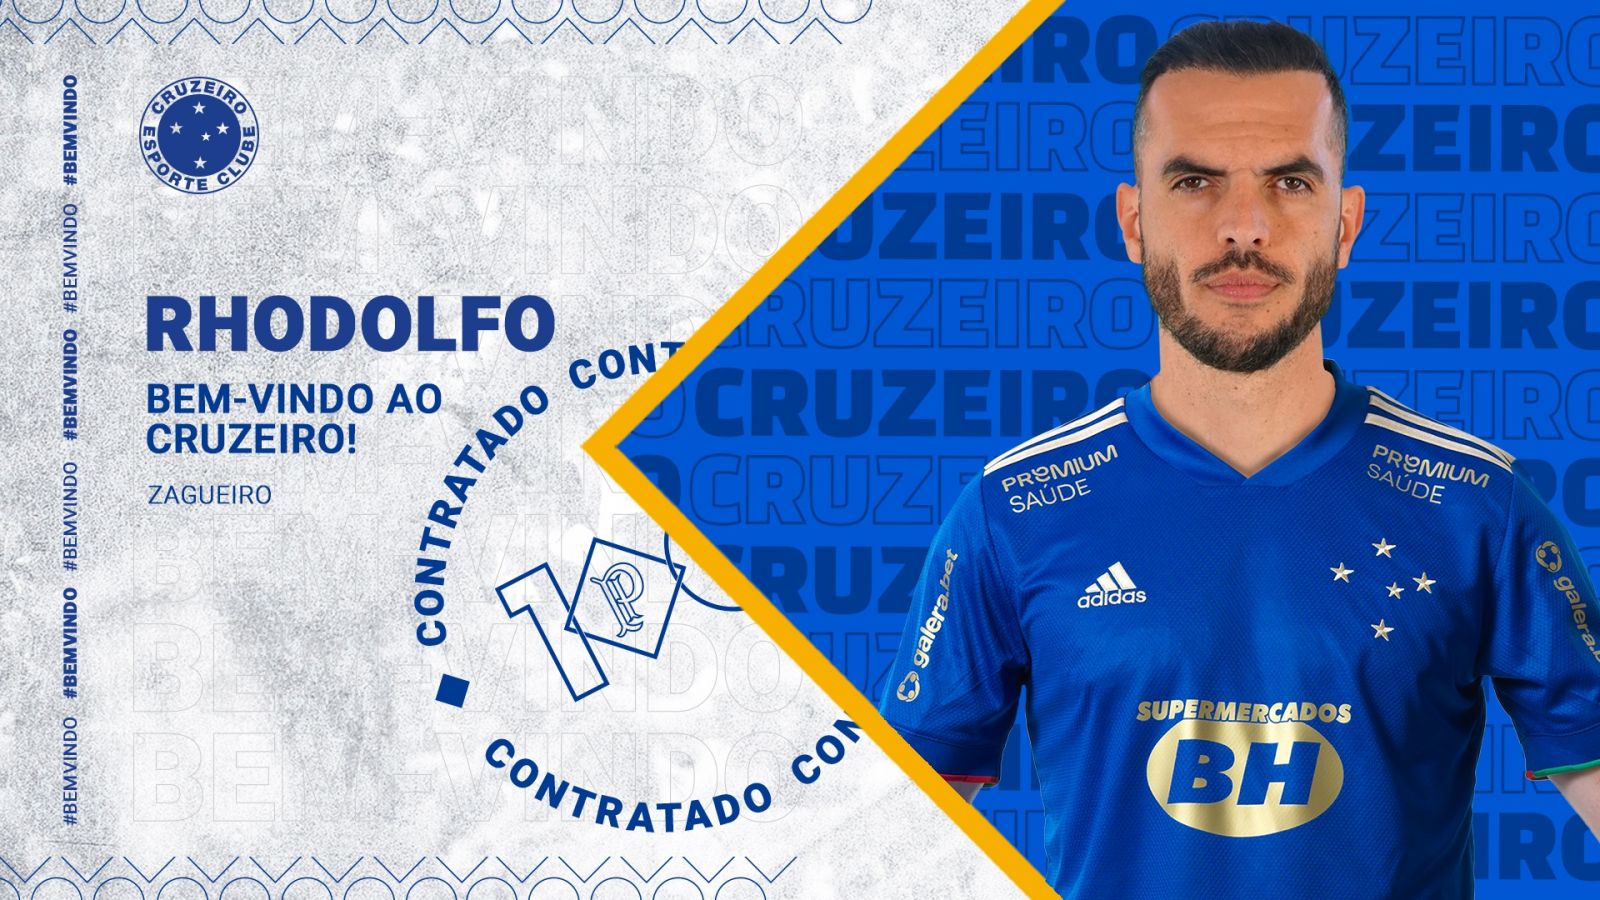 Rhodolfo Cruzeiro